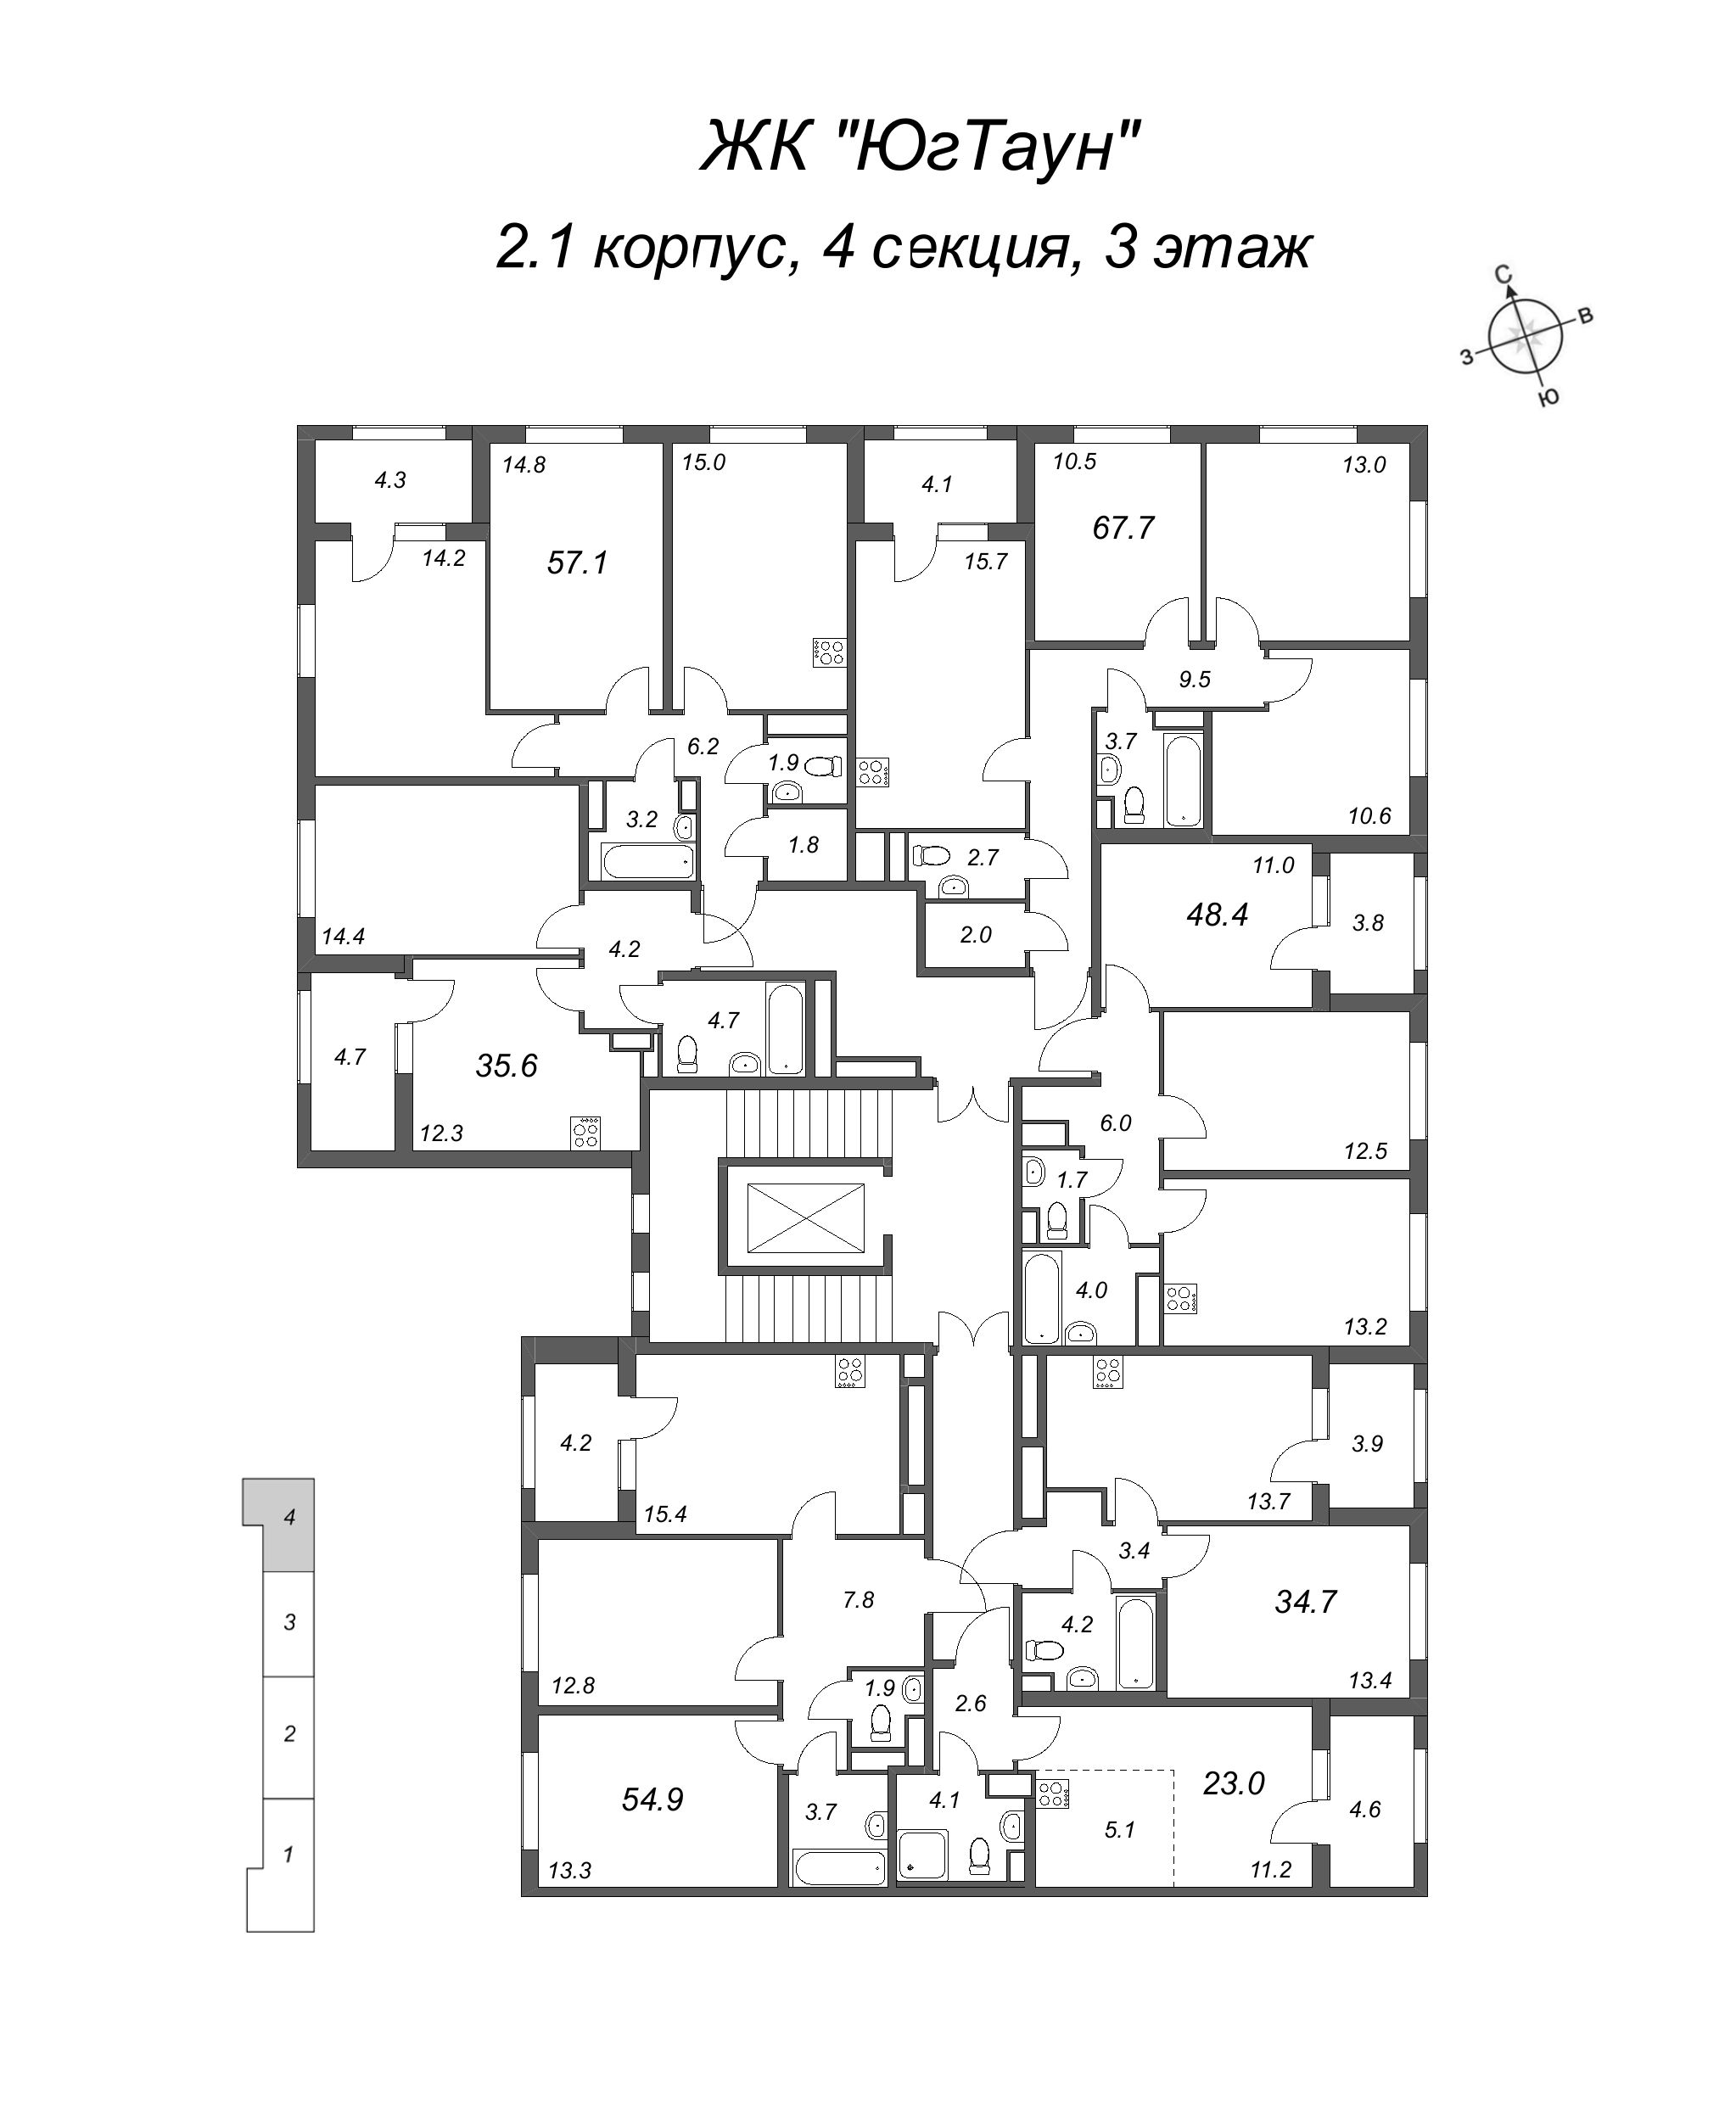 Квартира-студия, 23 м² в ЖК "ЮгТаун" - планировка этажа